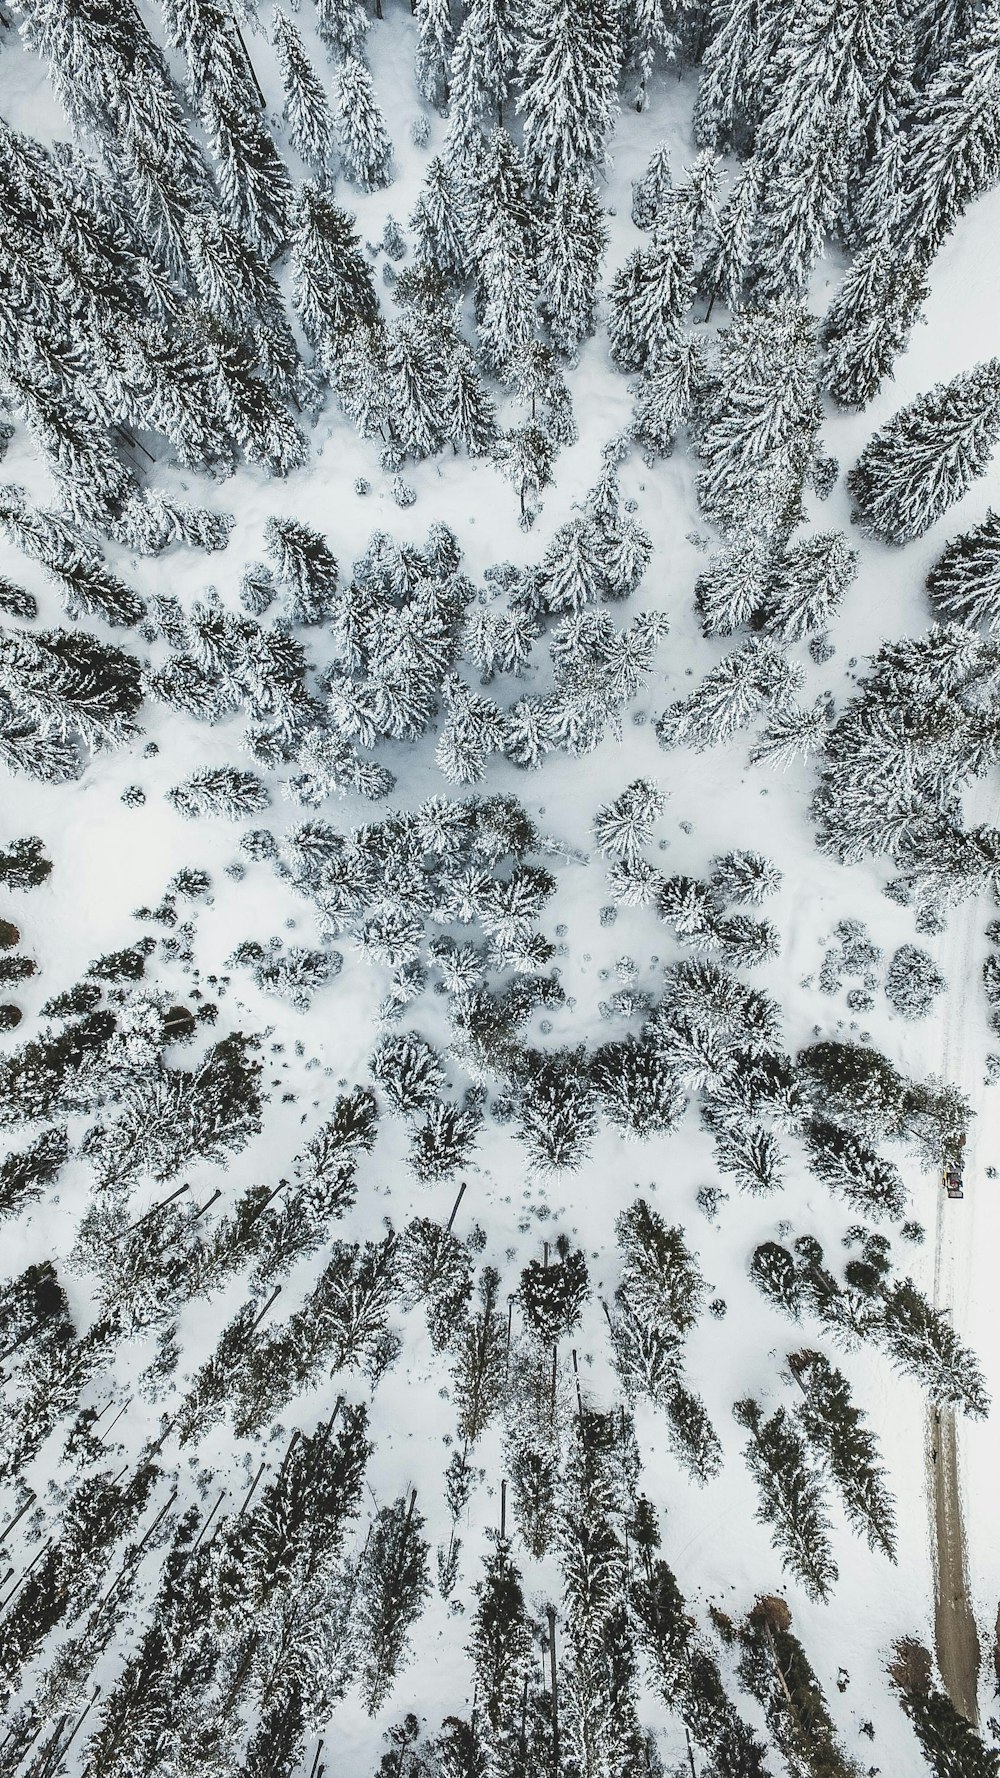 Vue aérienne d’arbres recouverts de neige